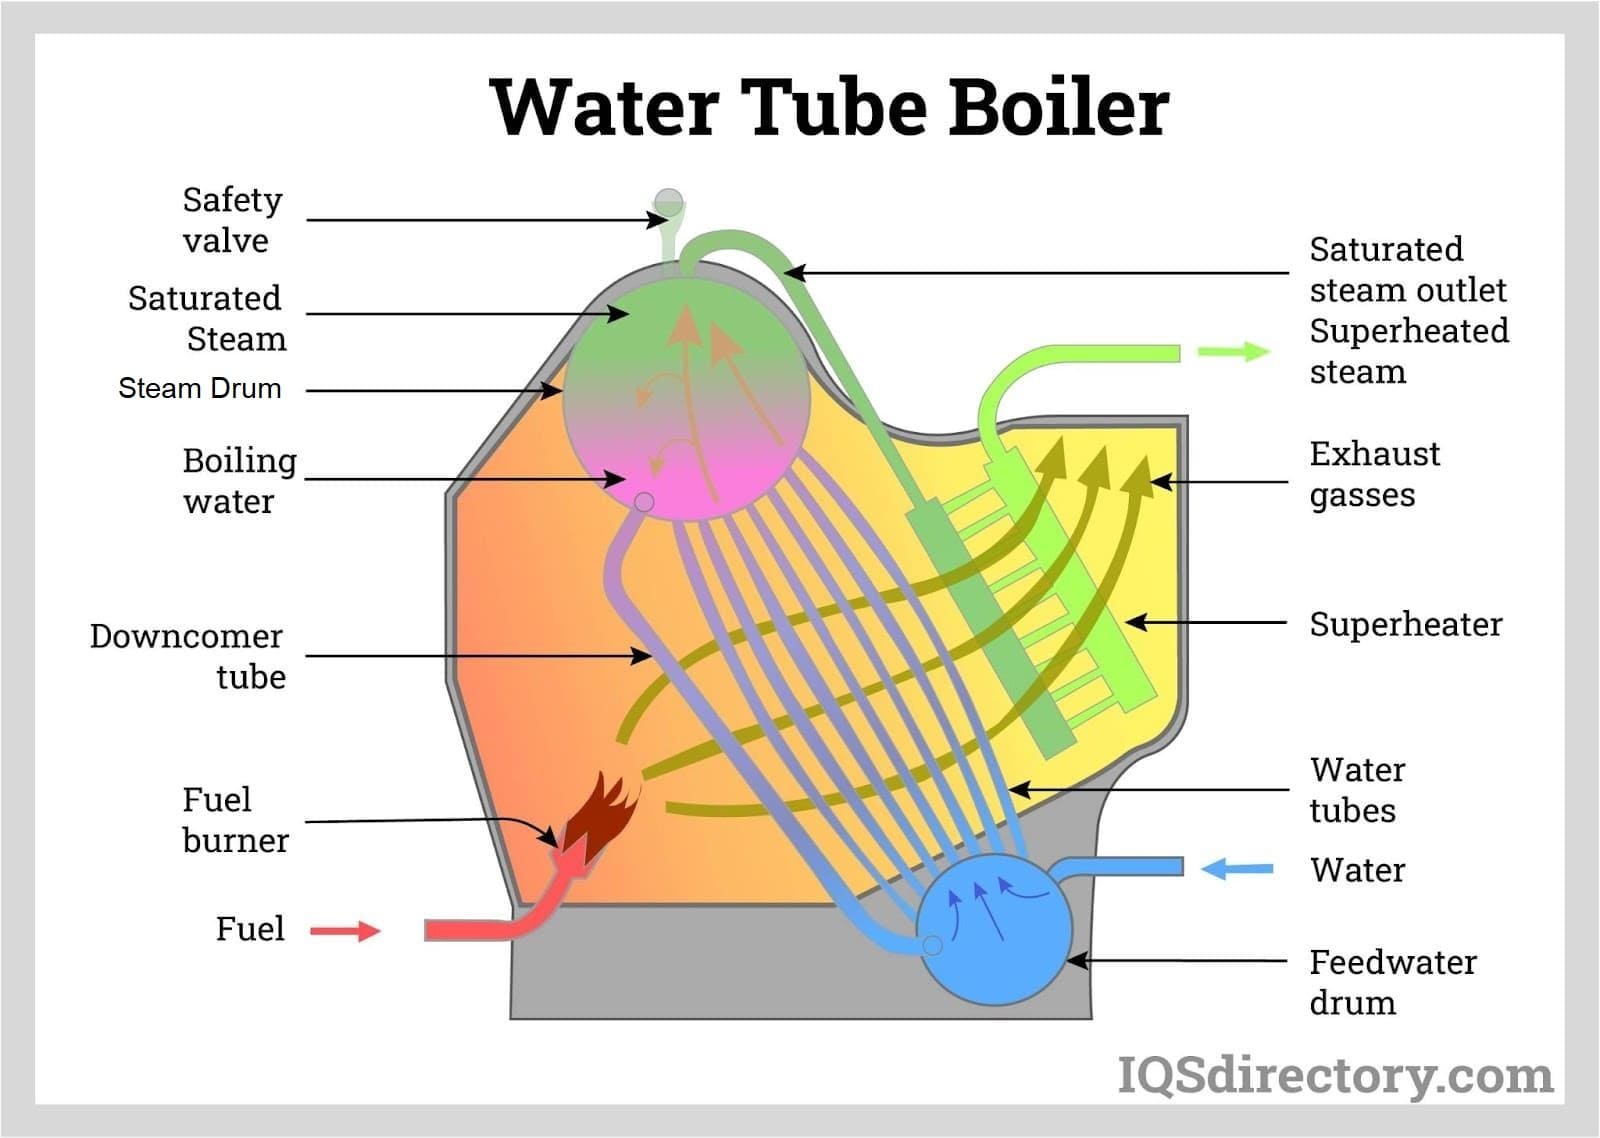 Water Tube Boilers